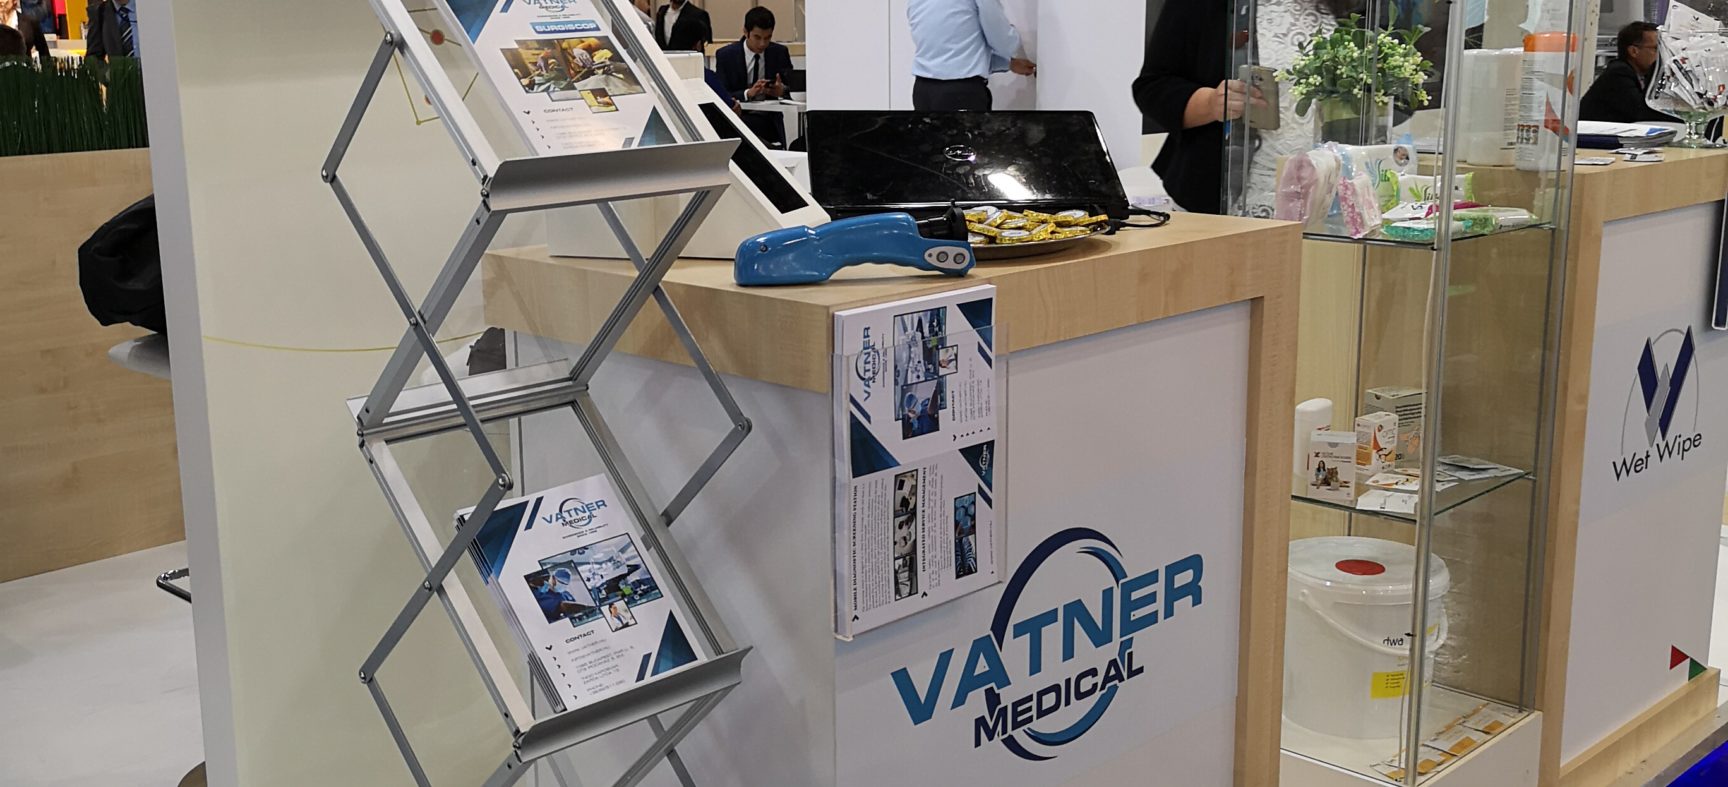 Vatner Kft. at the Medica 2018 exhibition